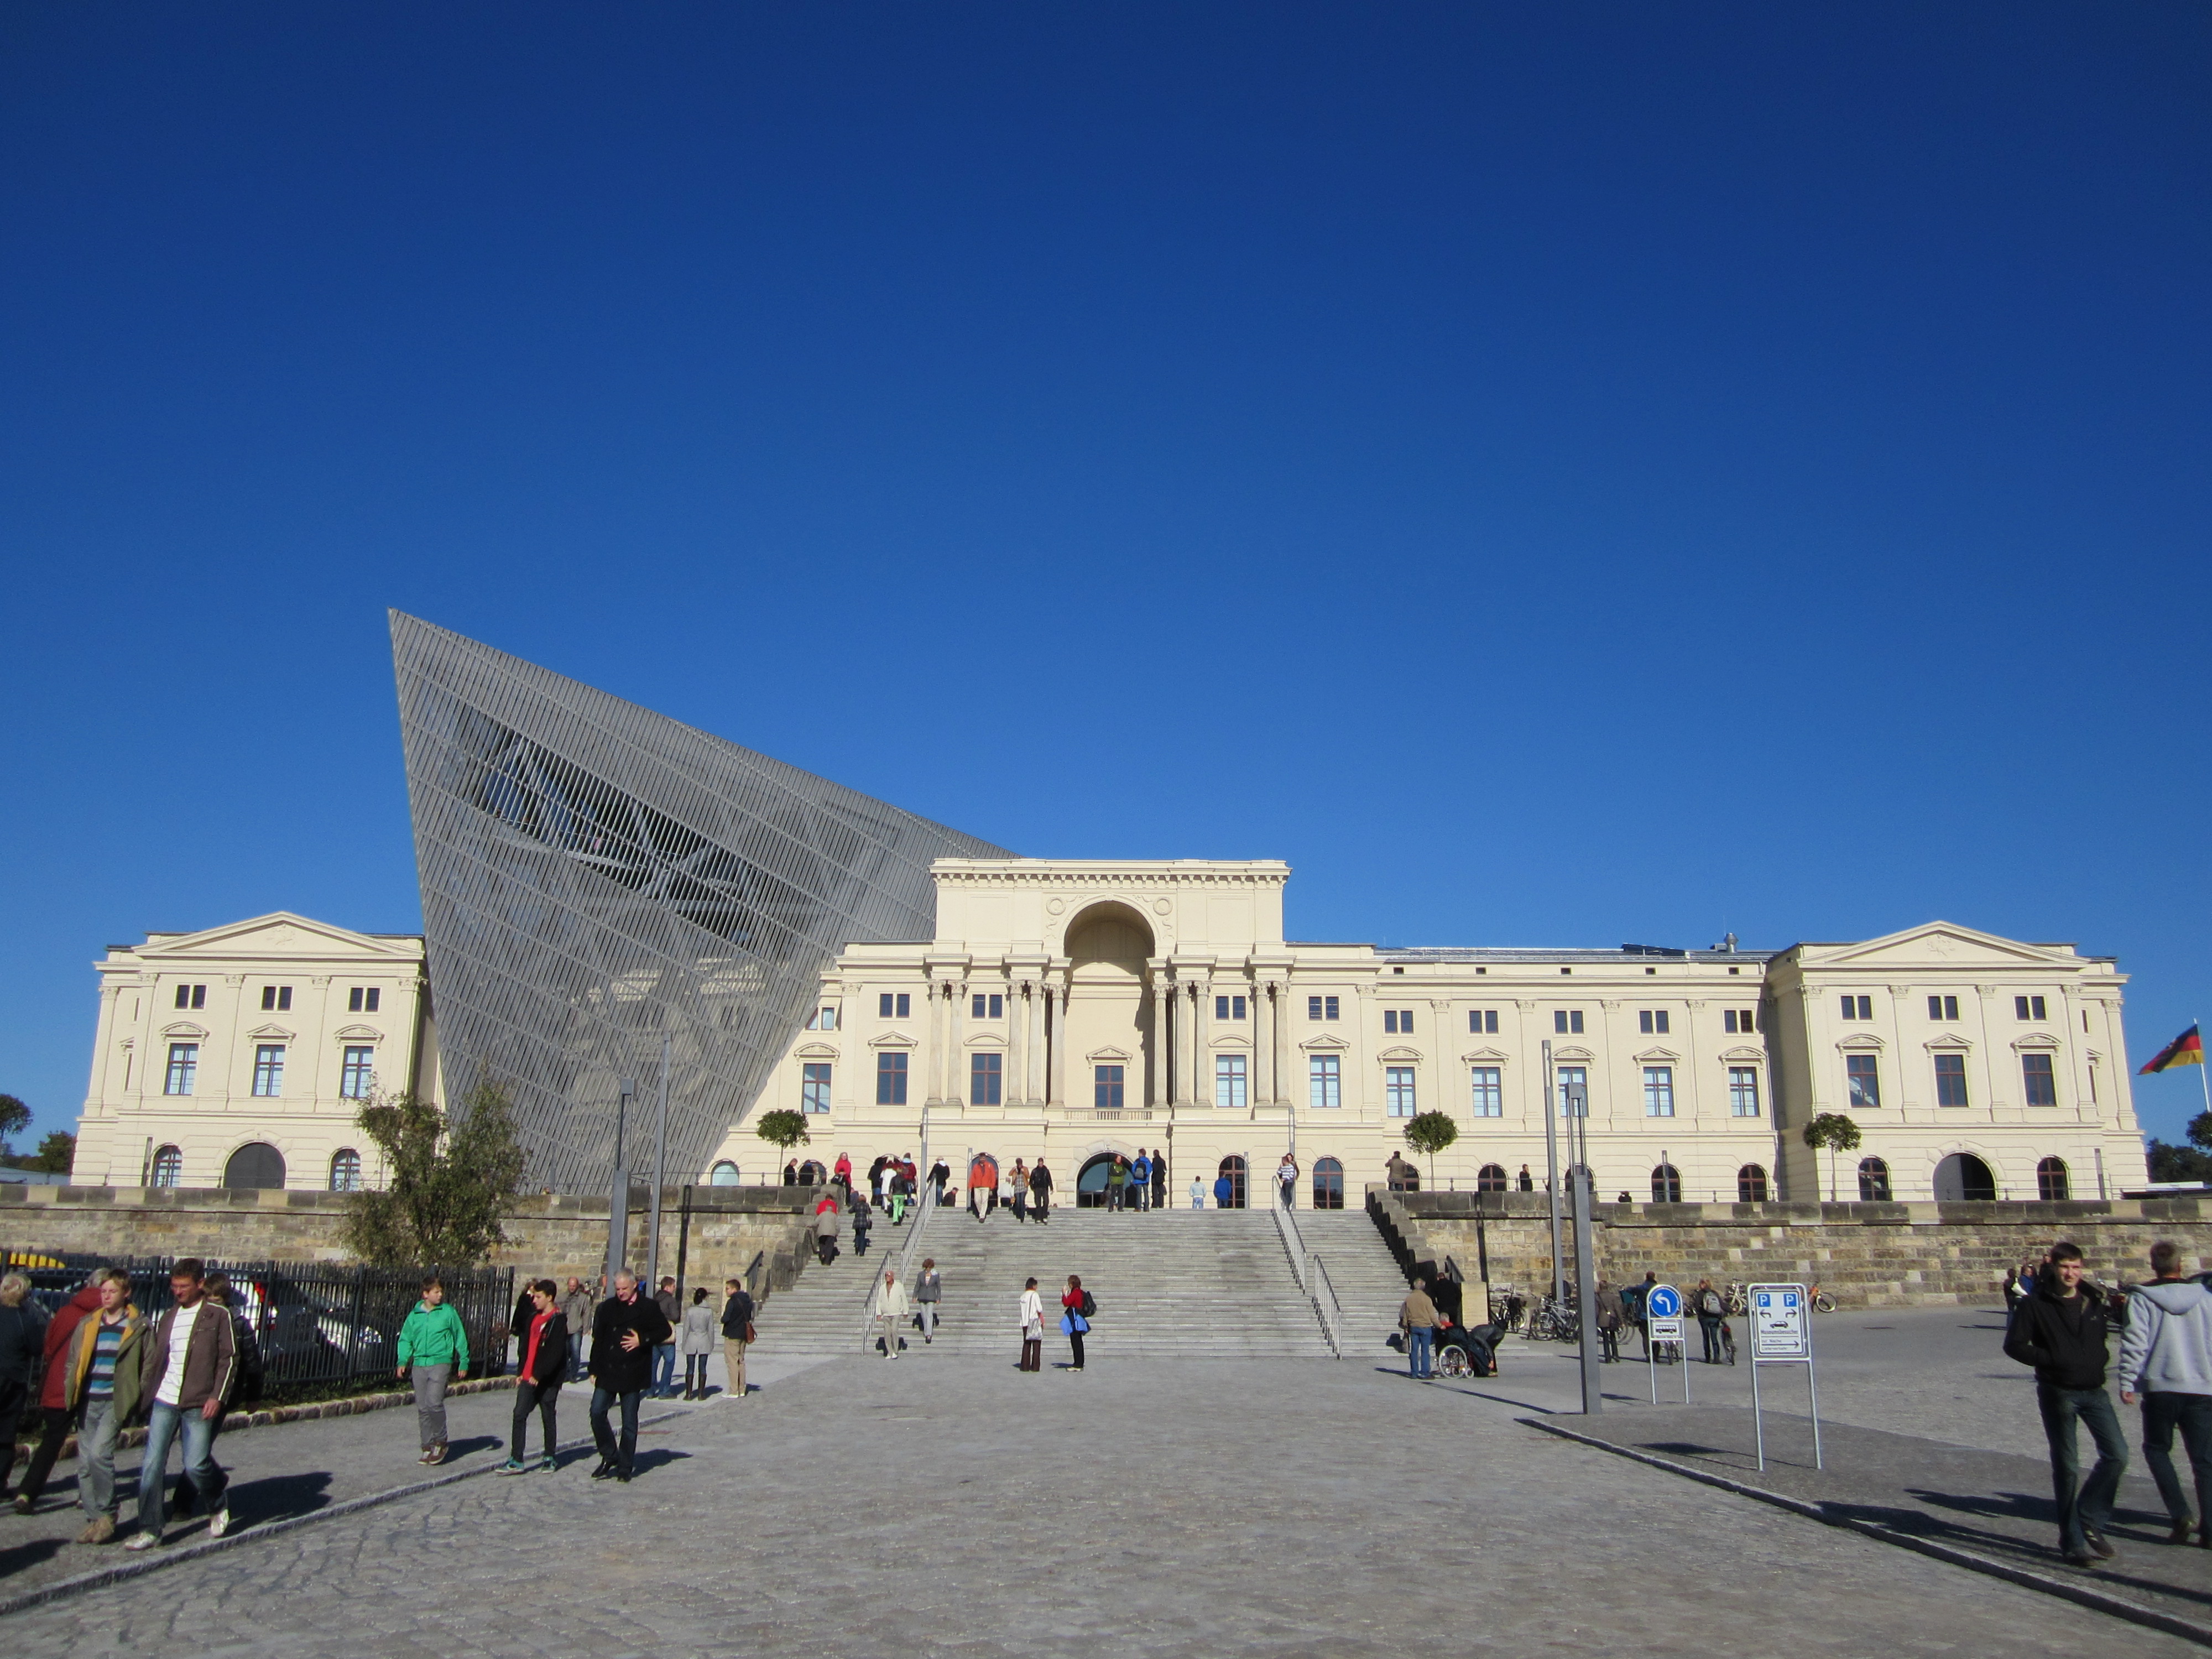 Bryła Muzeum Wojskowo-Historycznego w Dreźnie, przebudowana przez Daniela Libeskinda